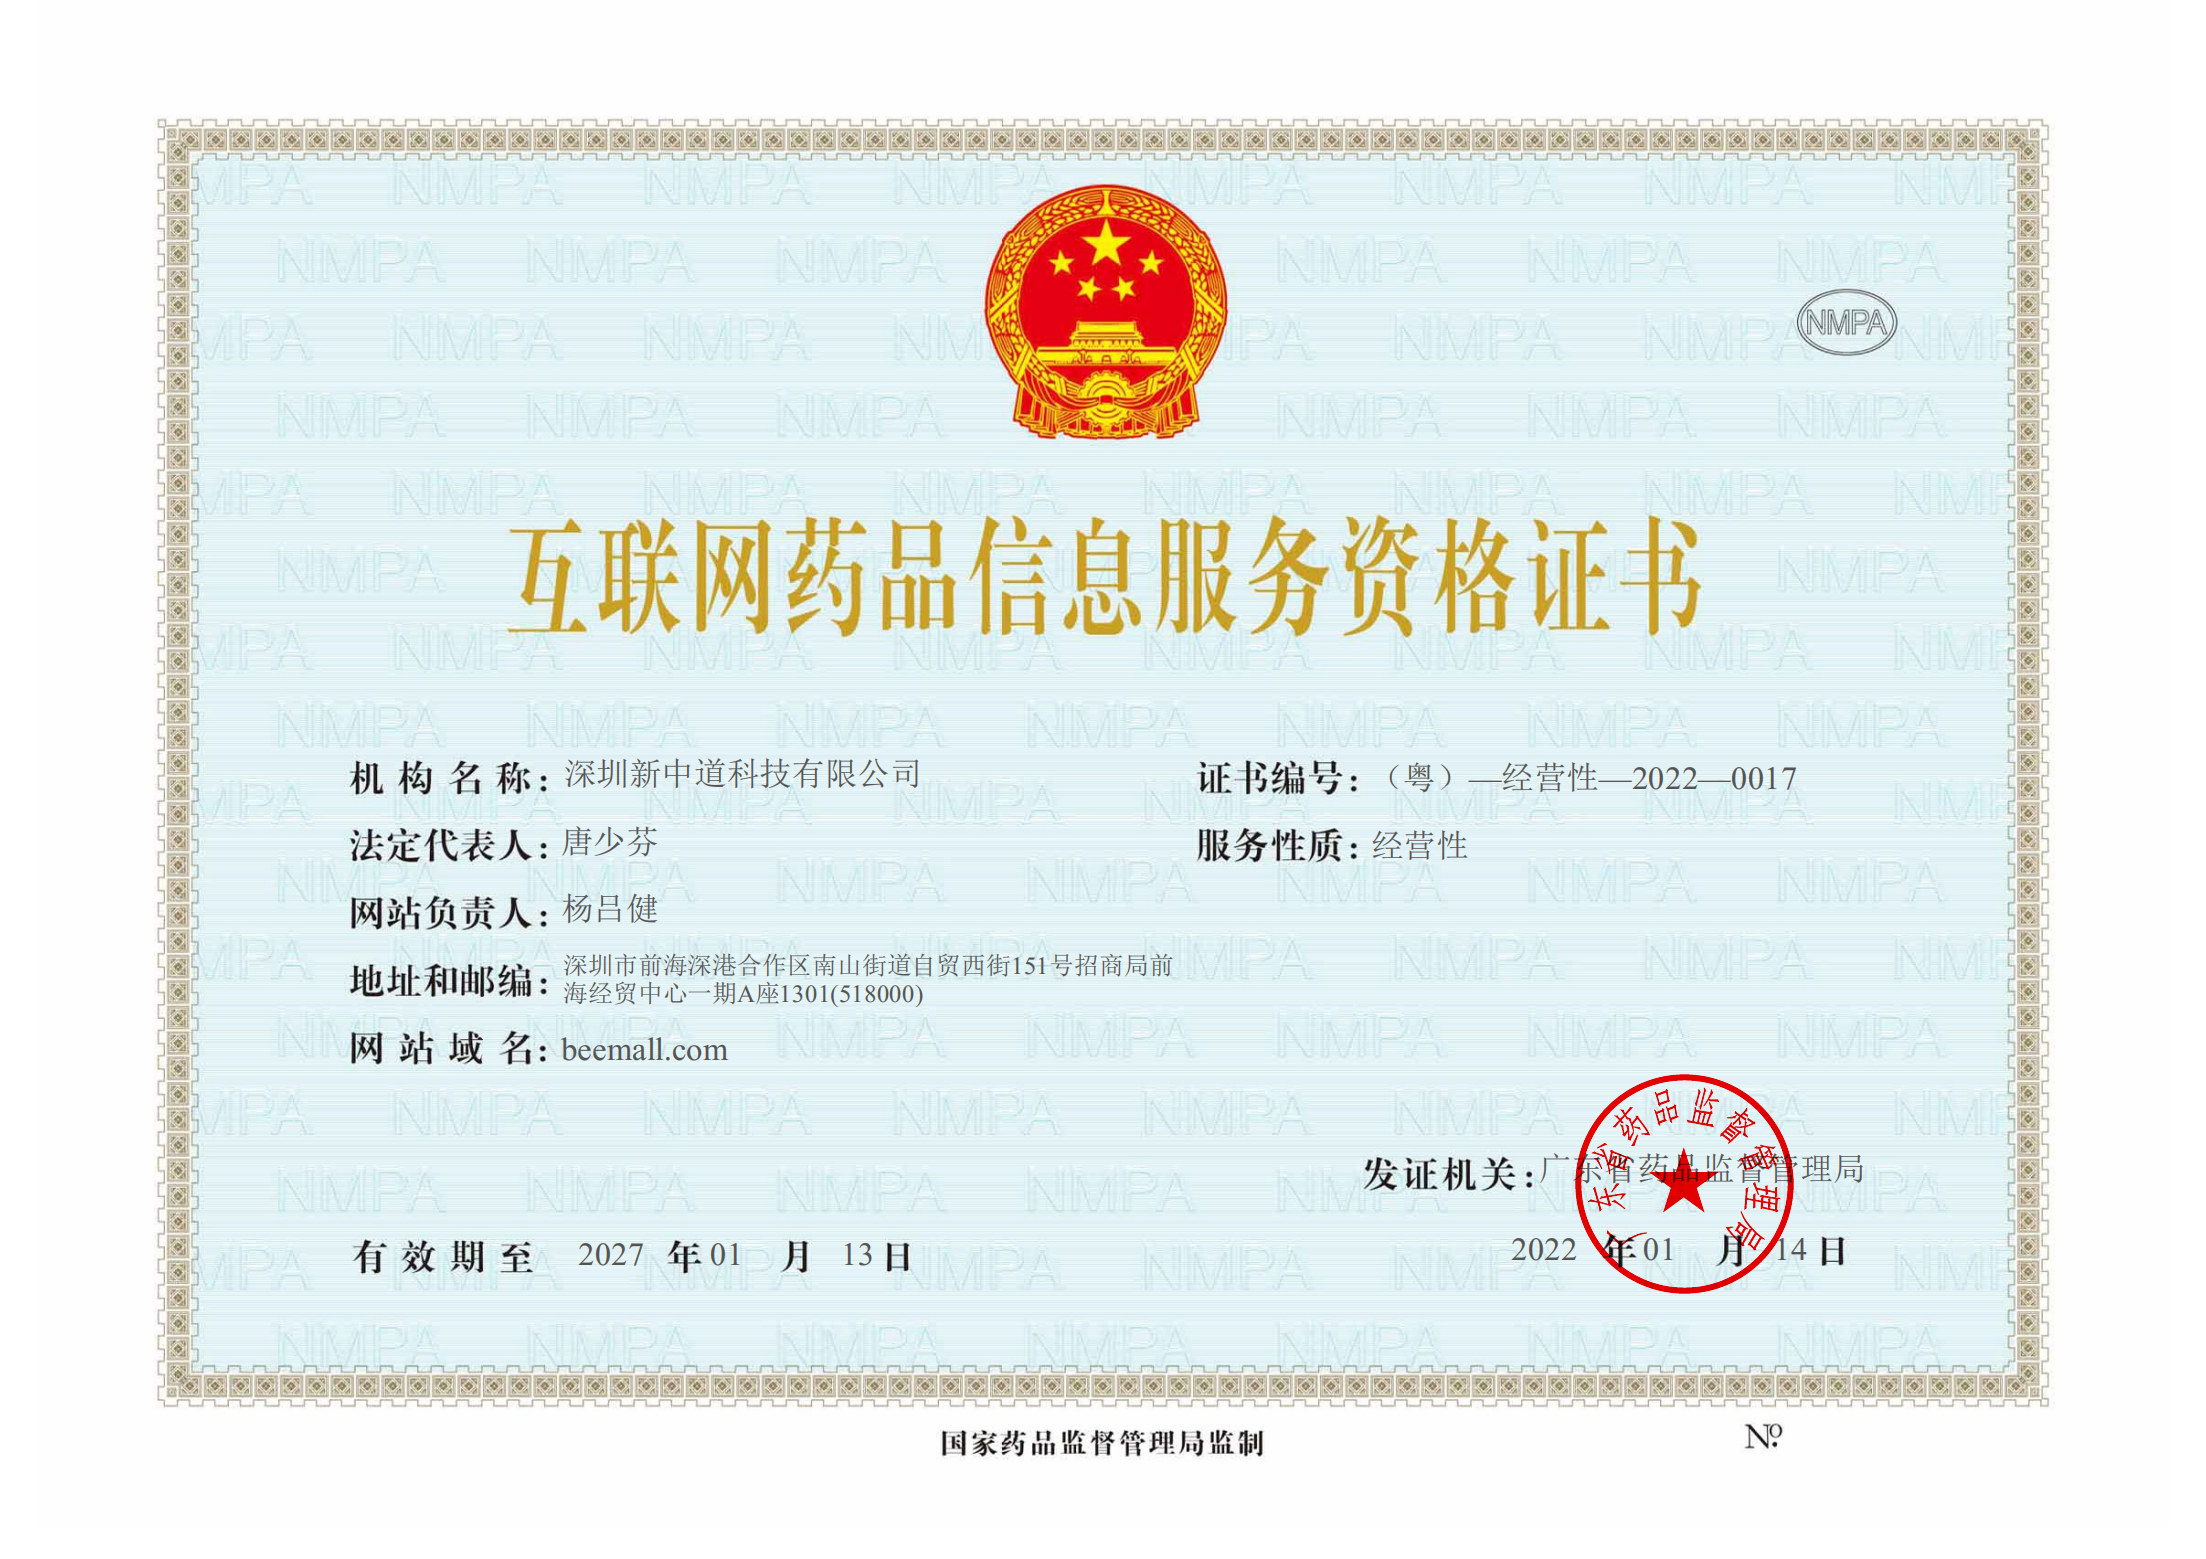 互联网药品信息服务资格证-深圳新中道科技有限公司_00.png